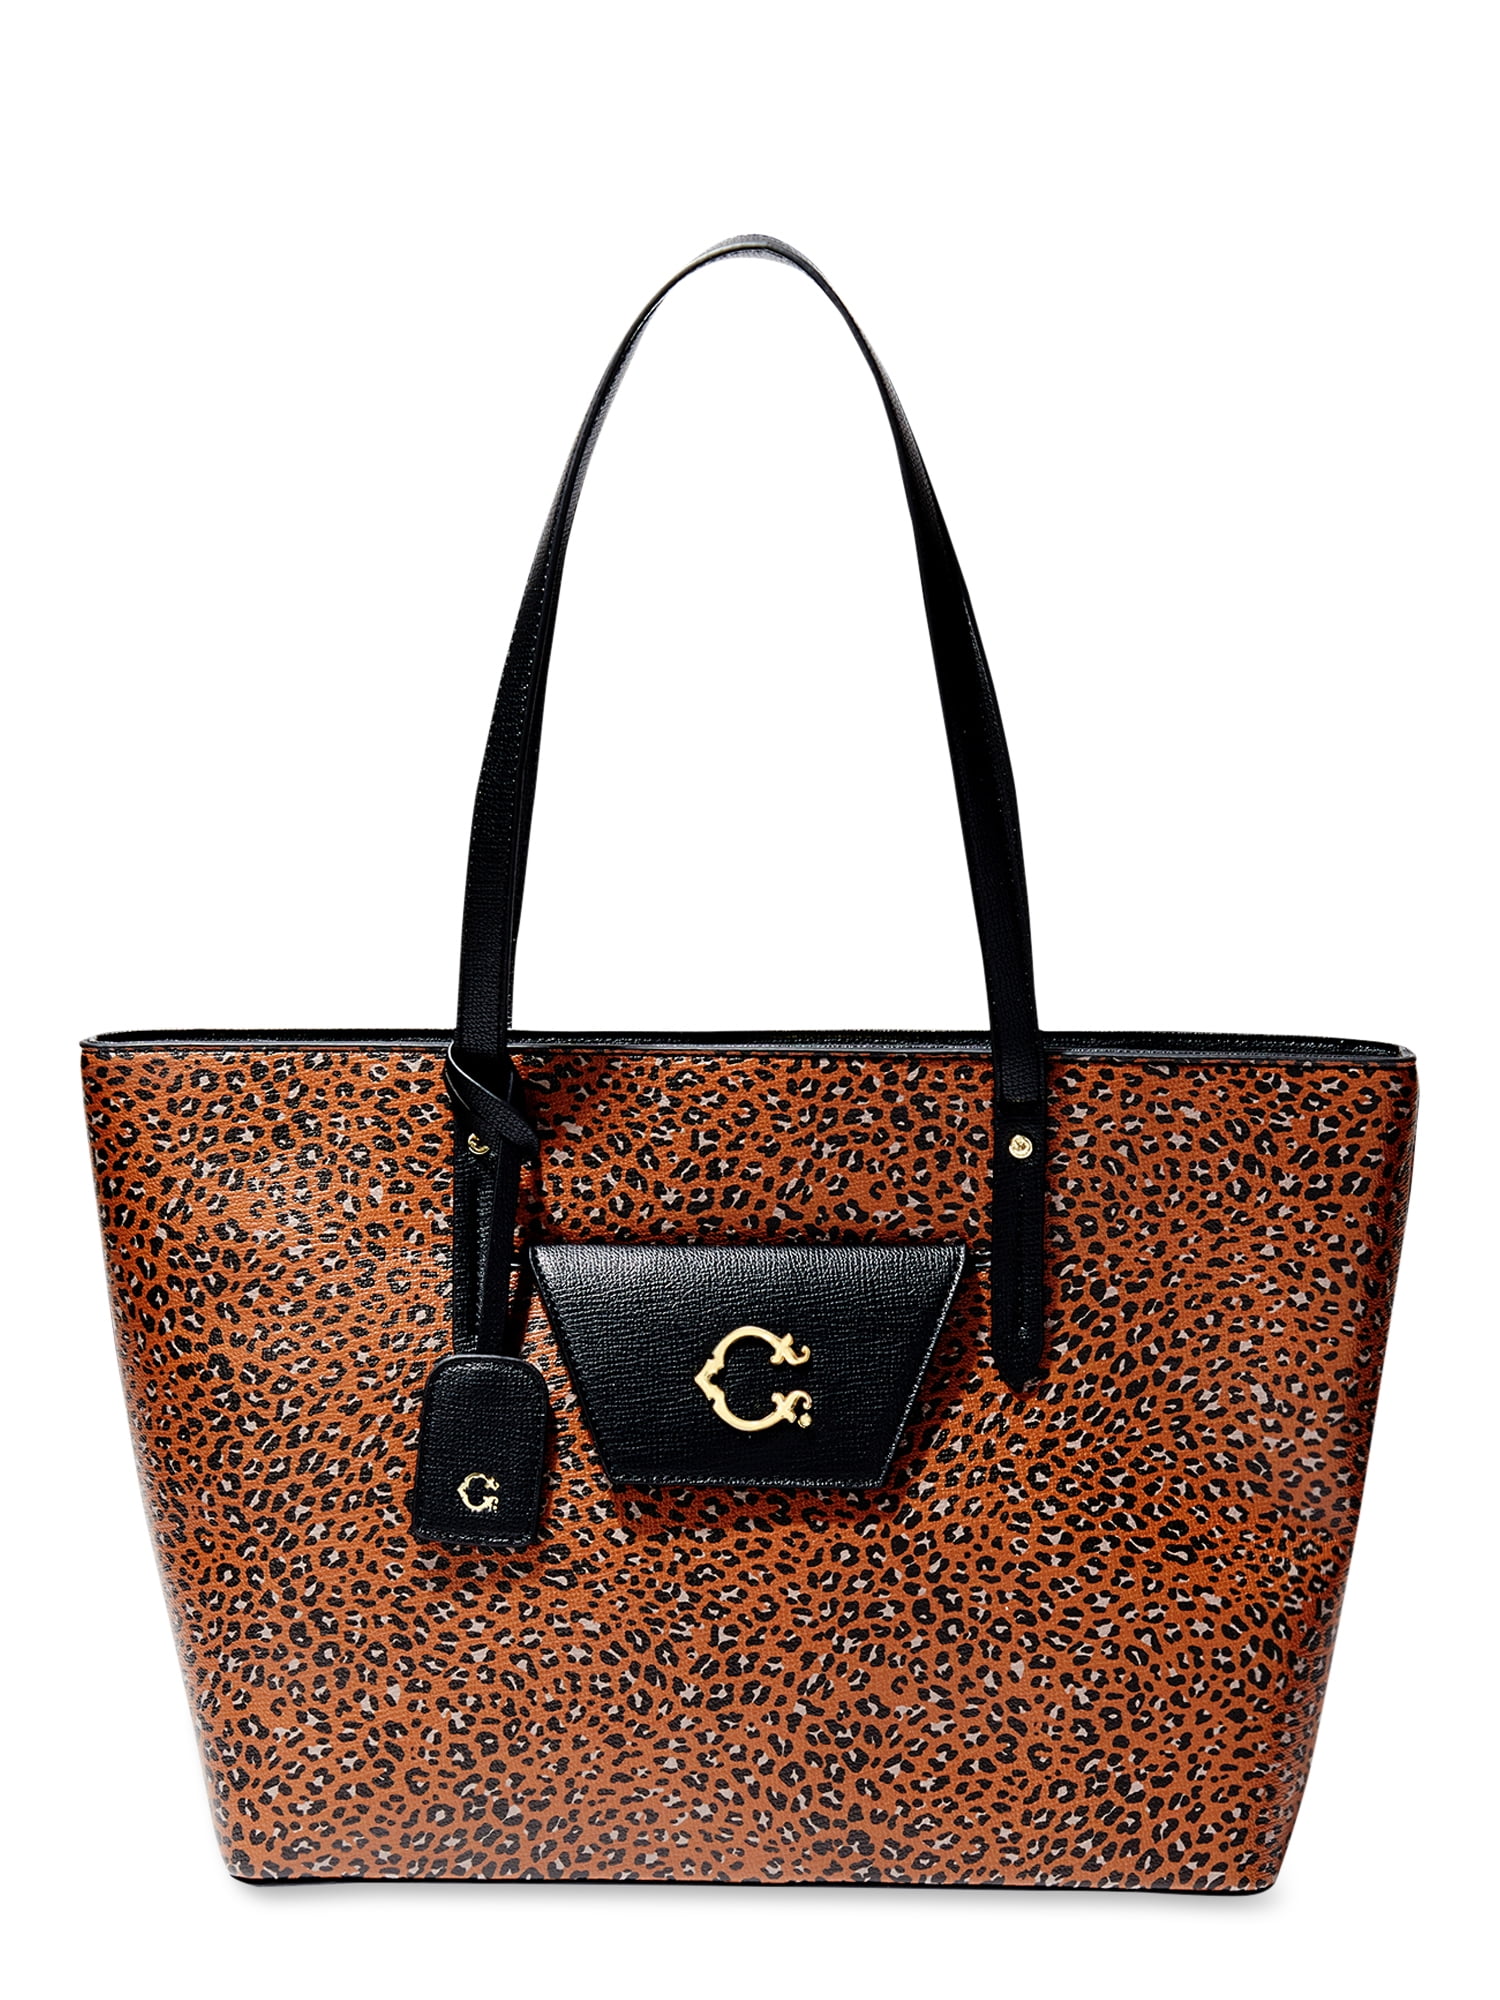 Hobo Handbag Faux Fur Tote Bag Brown Cheetah Leopard Print 